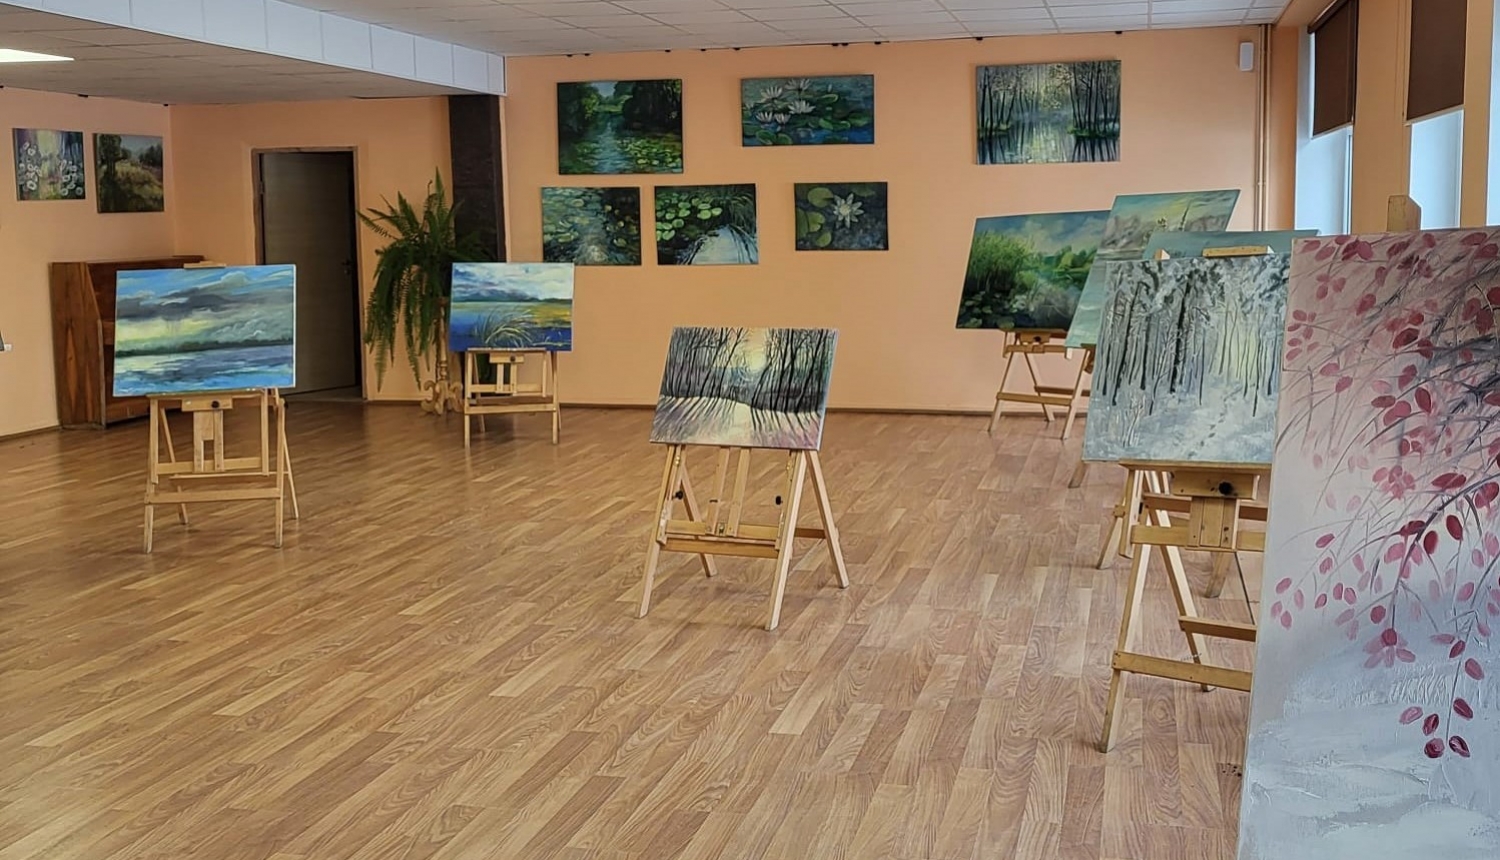 Iedzīvotāji atzinīgi novērtējuši Olgas Rečes gleznu izstādi 